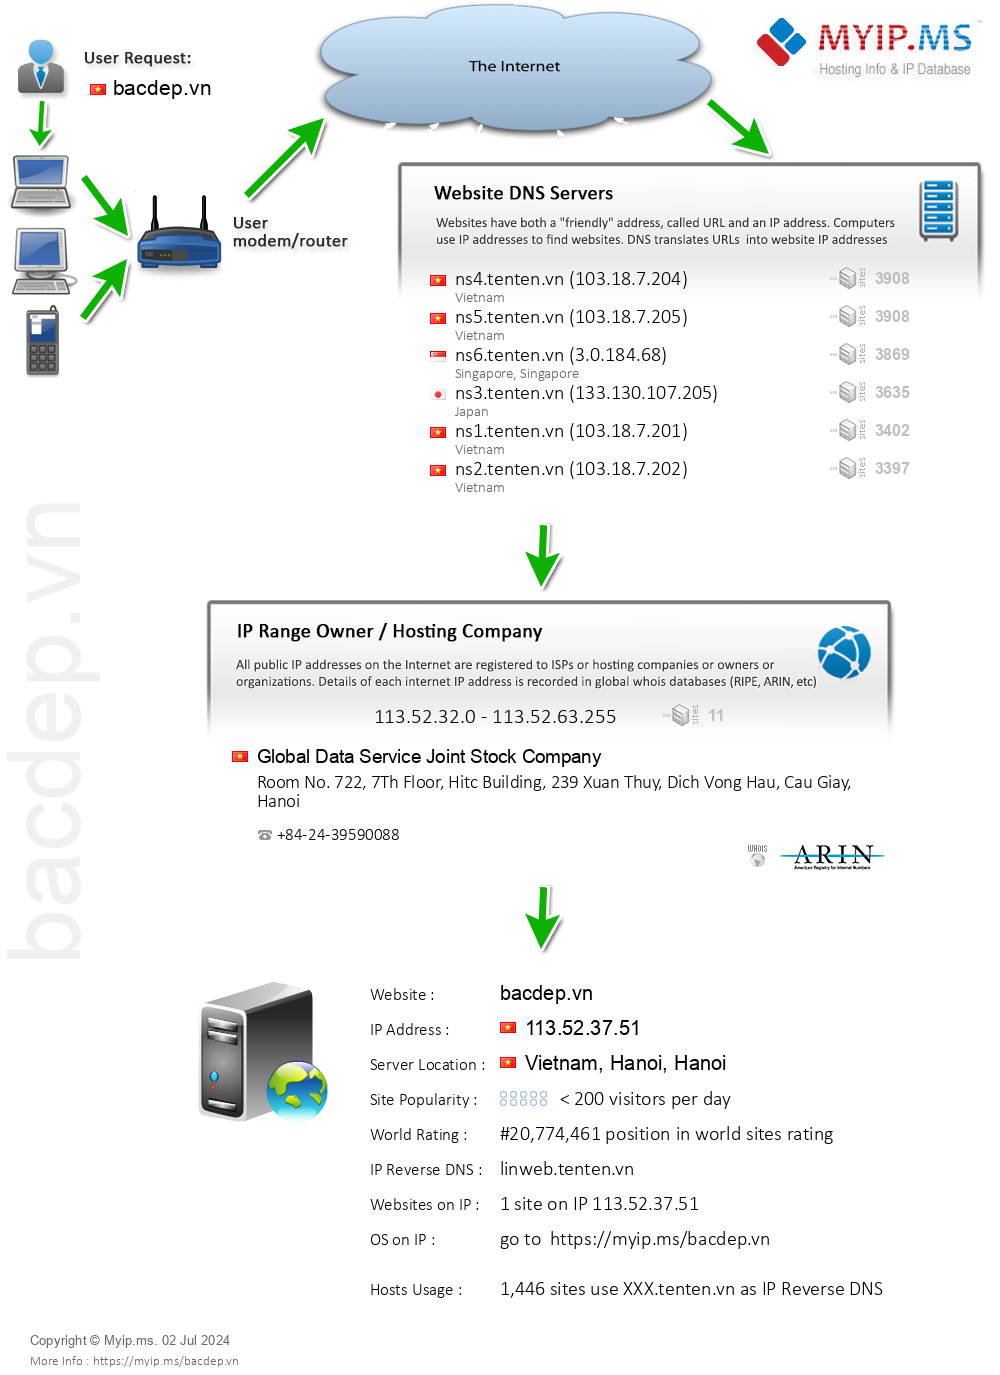 Bacdep.vn - Website Hosting Visual IP Diagram